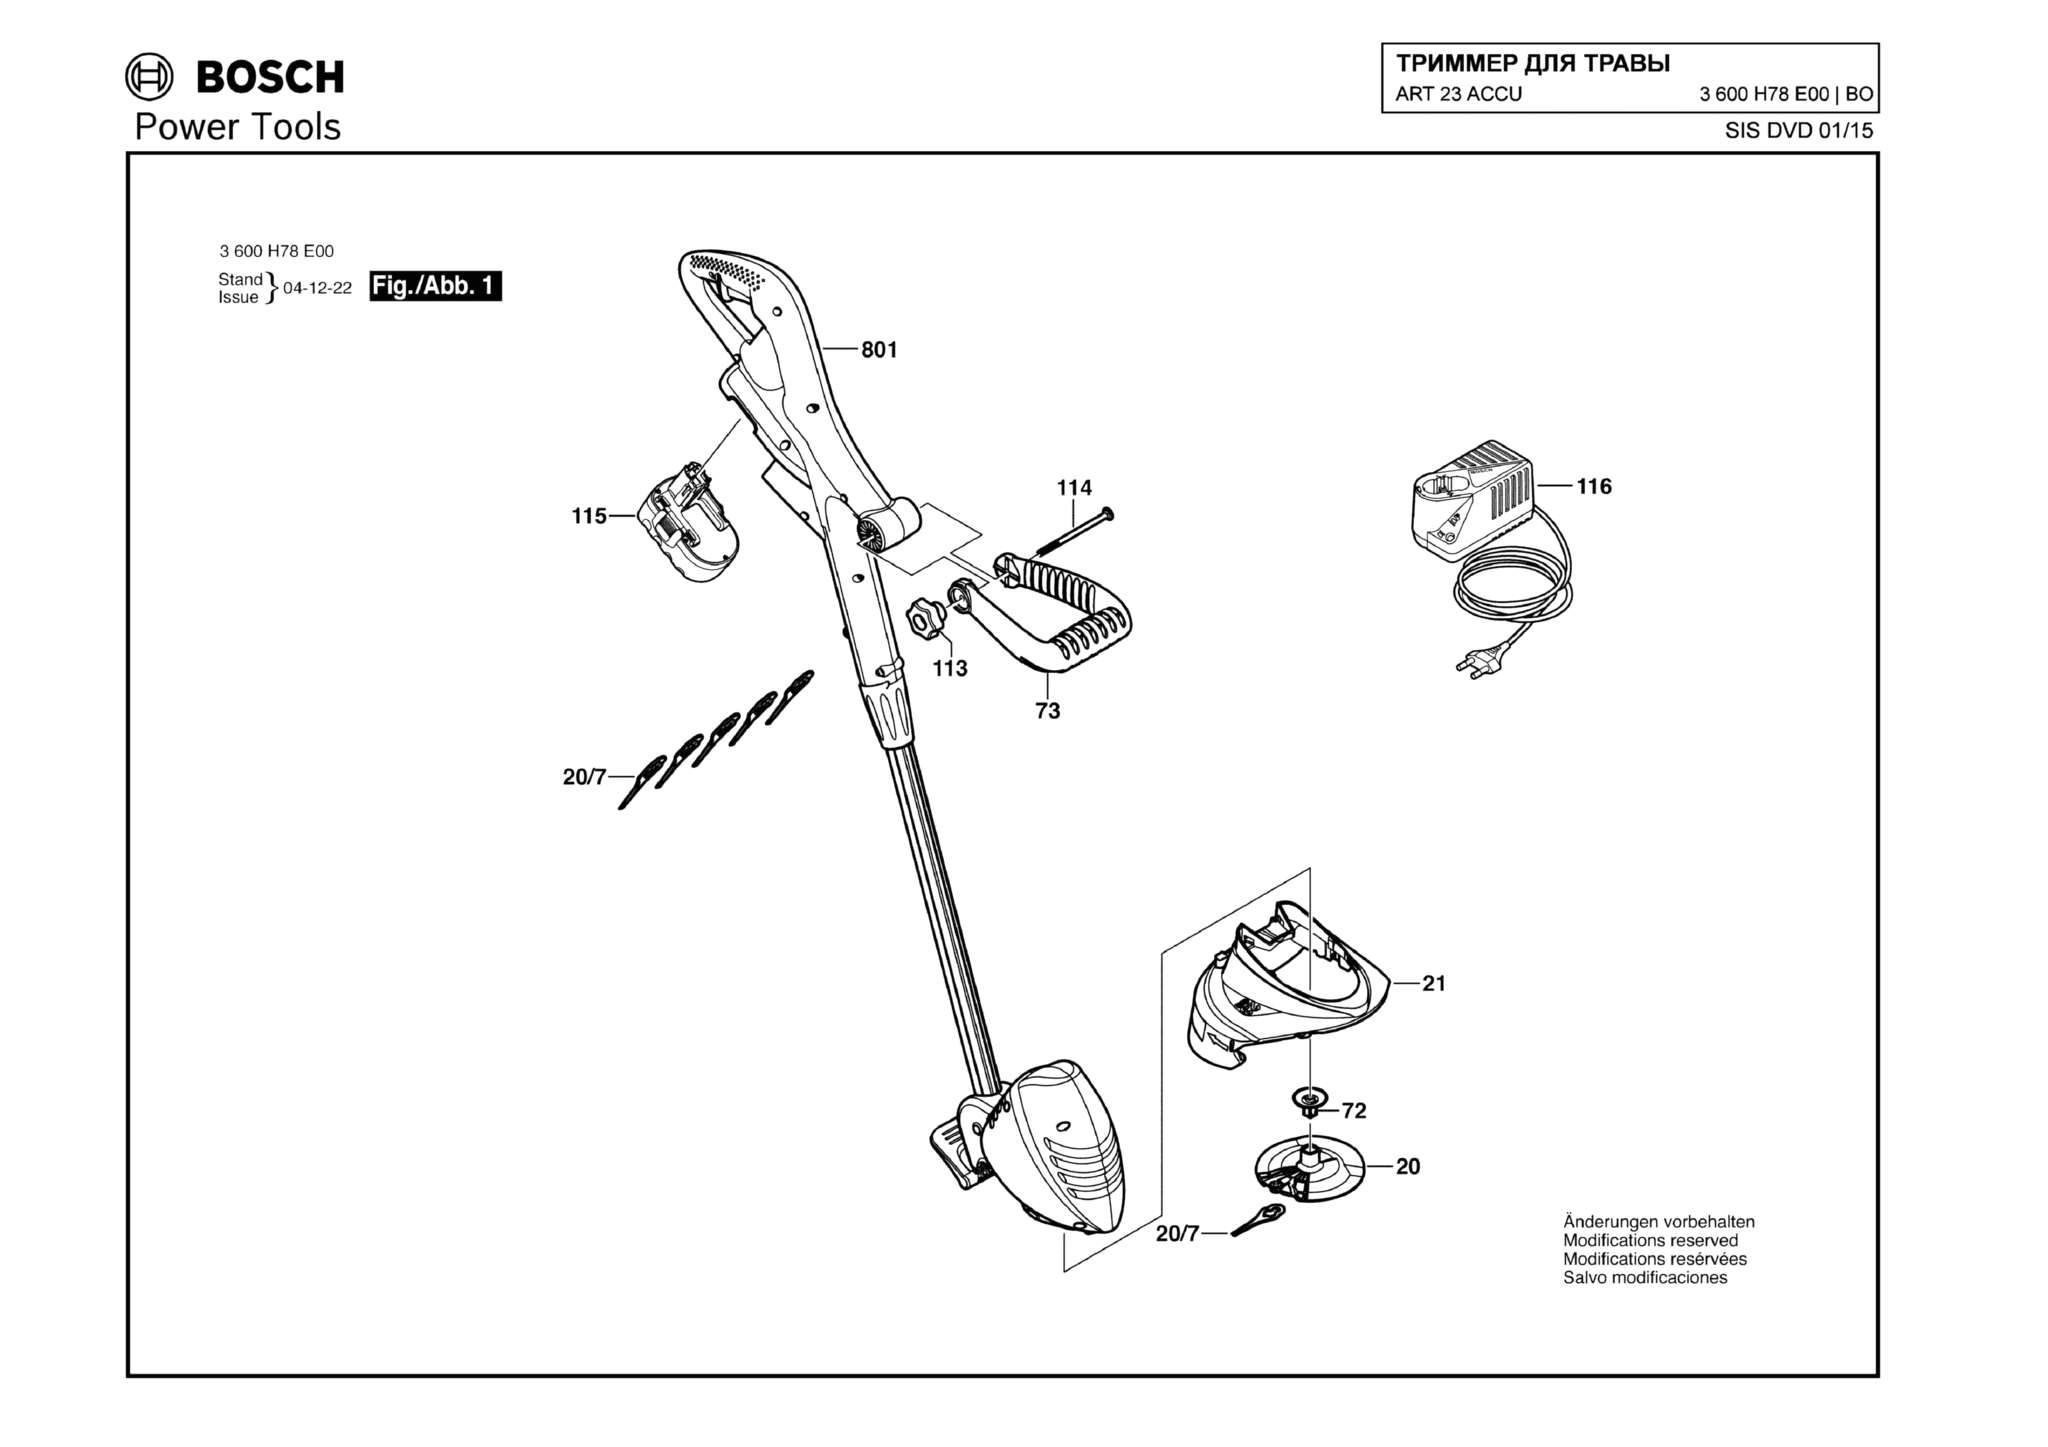 Запчасти, схема и деталировка Bosch ART 23 ACCU (ТИП 3600H78E00)